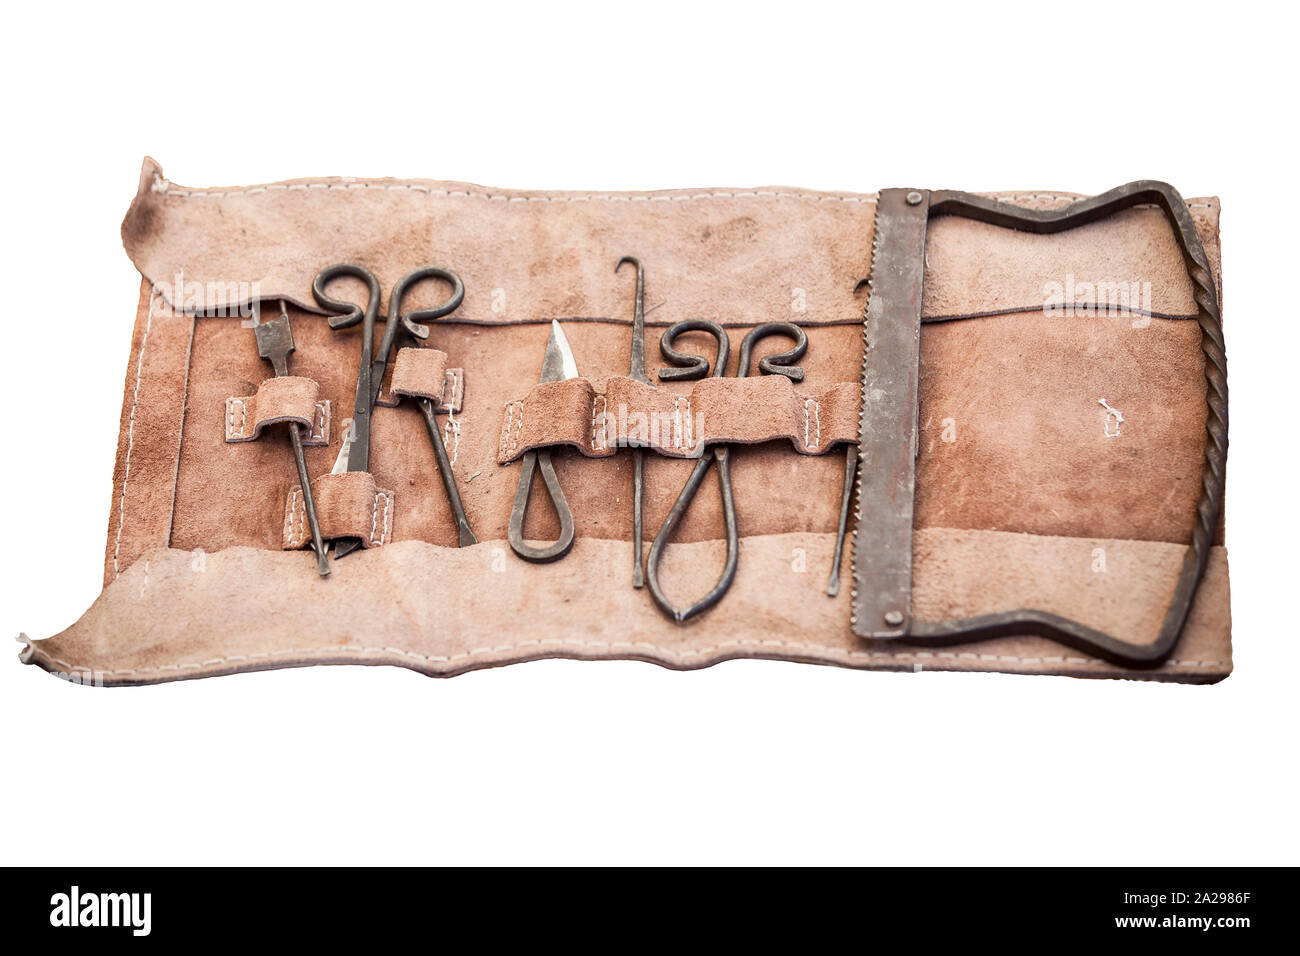 Braune Arzttasche aus Leder für Hausbesuche Stockfotografie - Alamy